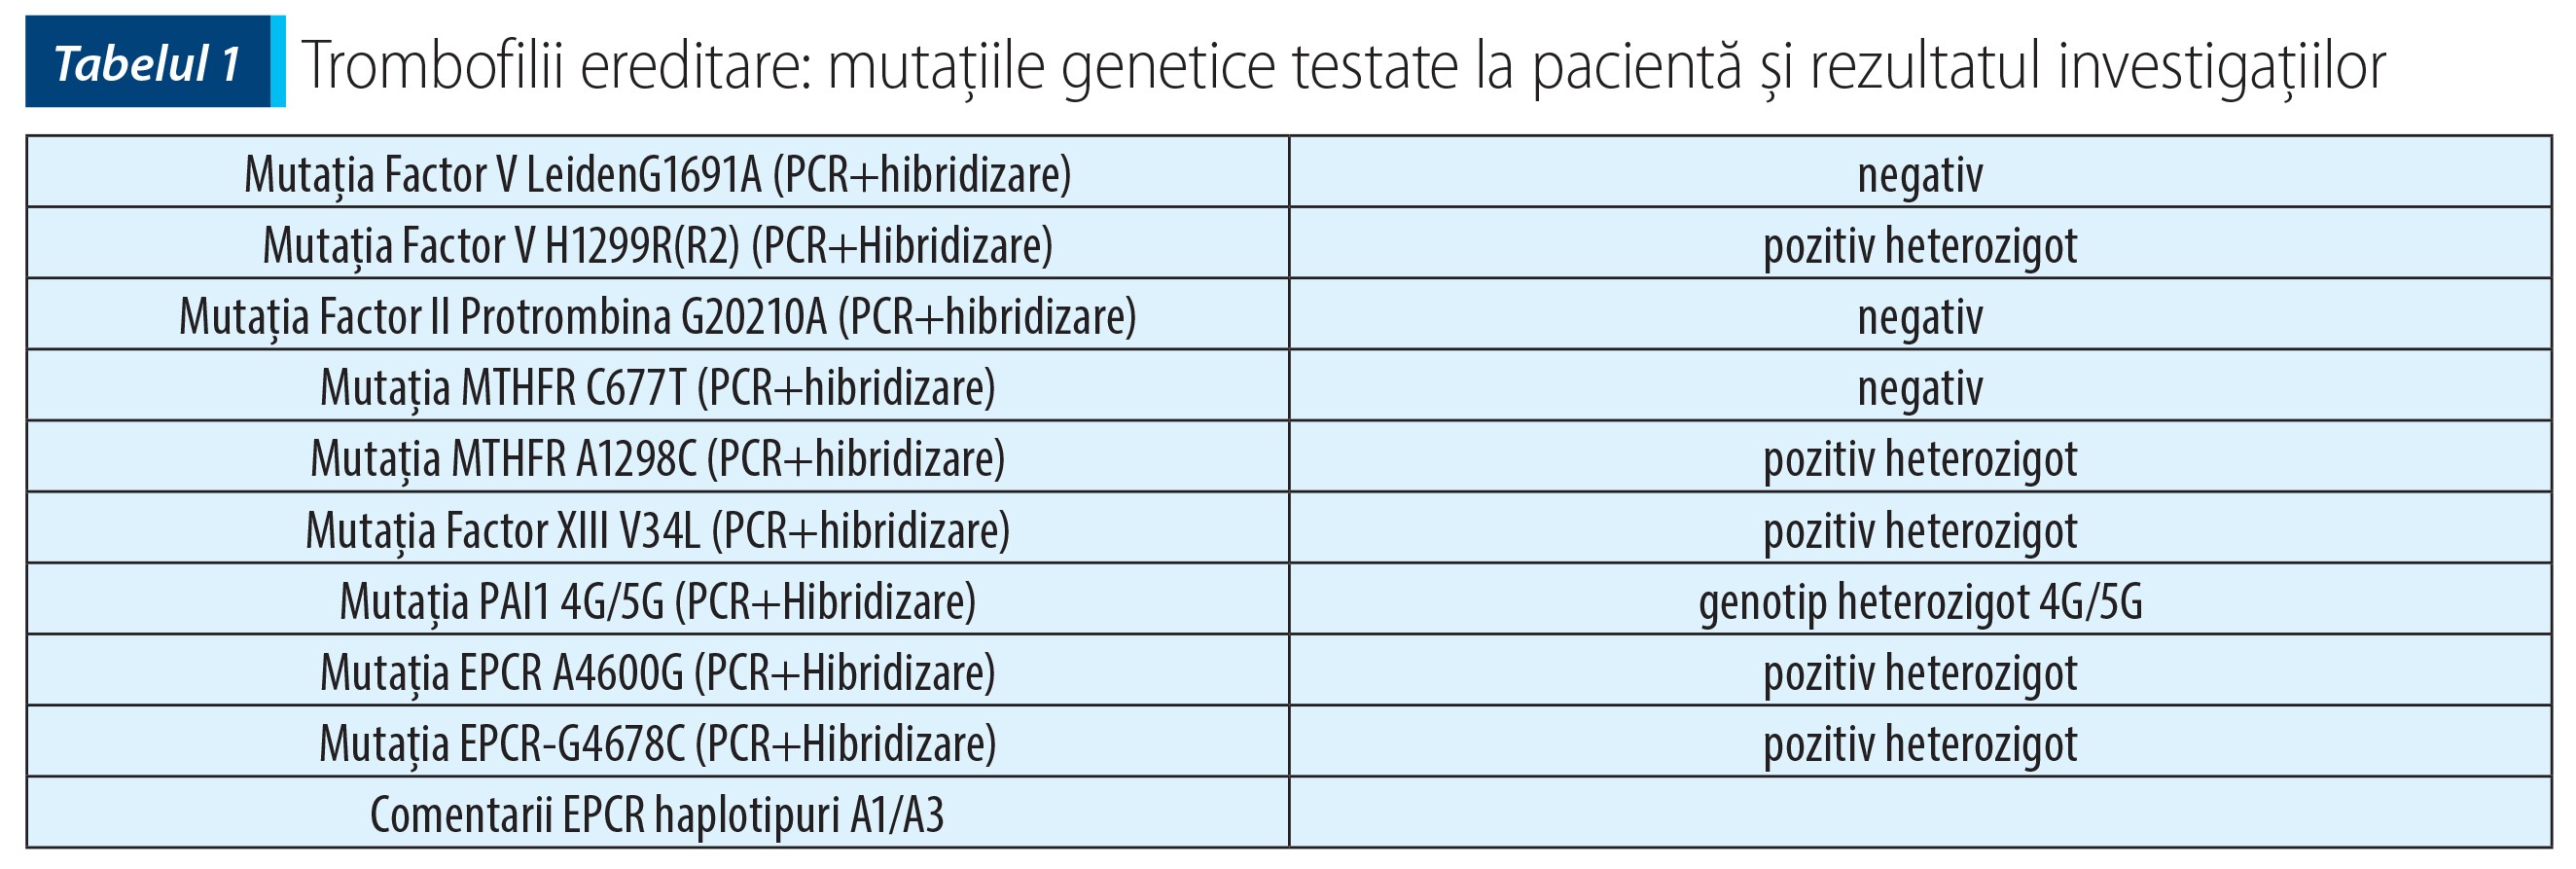 Tabele 1; Trombofilii ereditare mutațiile genetice testate la pacientă și rezultatul investigațiilor